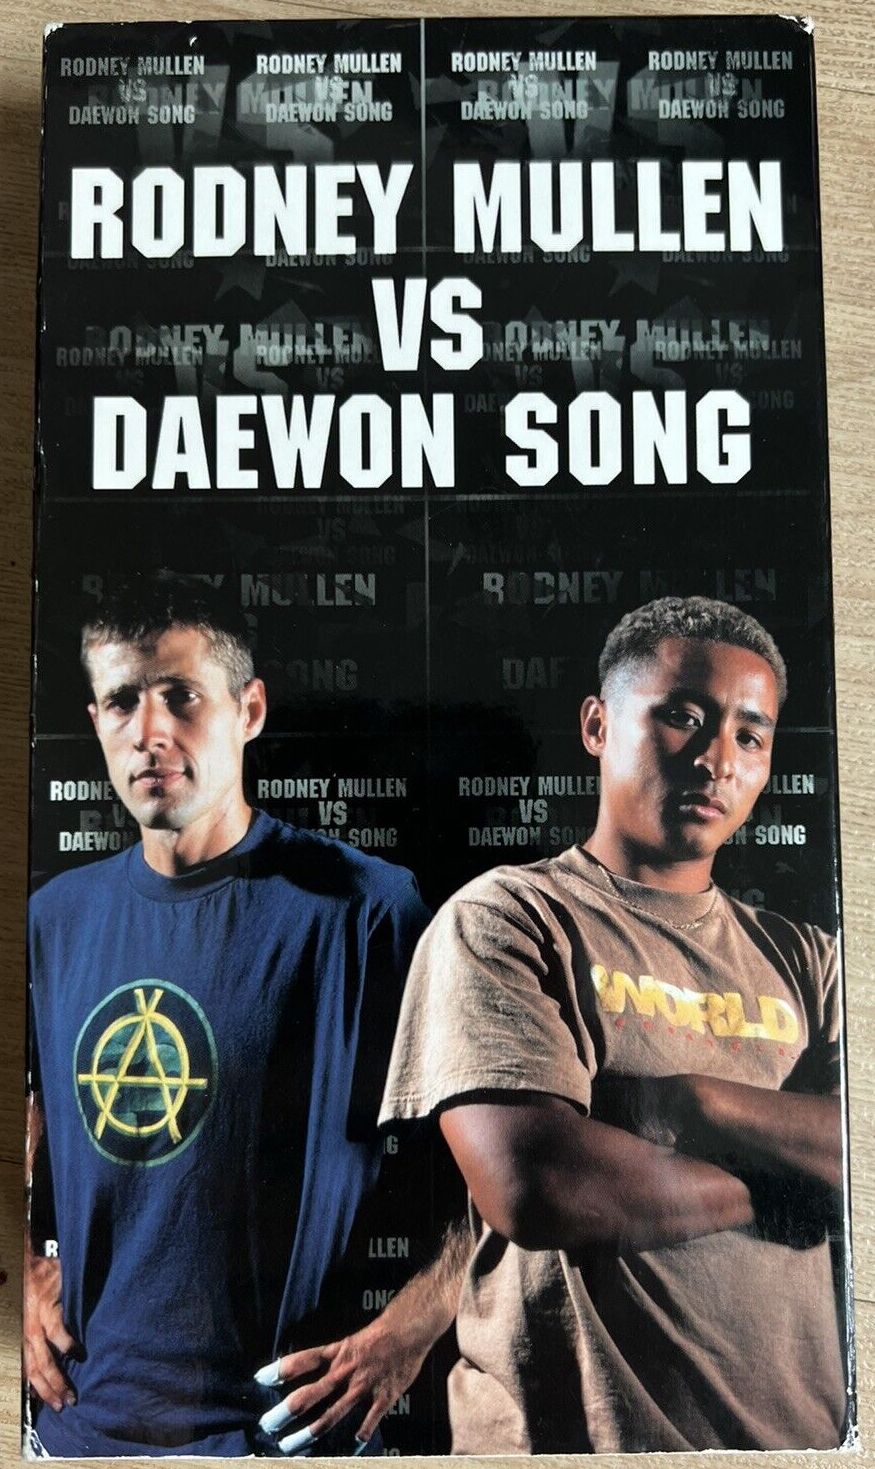 Rodney Mullen vs Daewon Song cover art